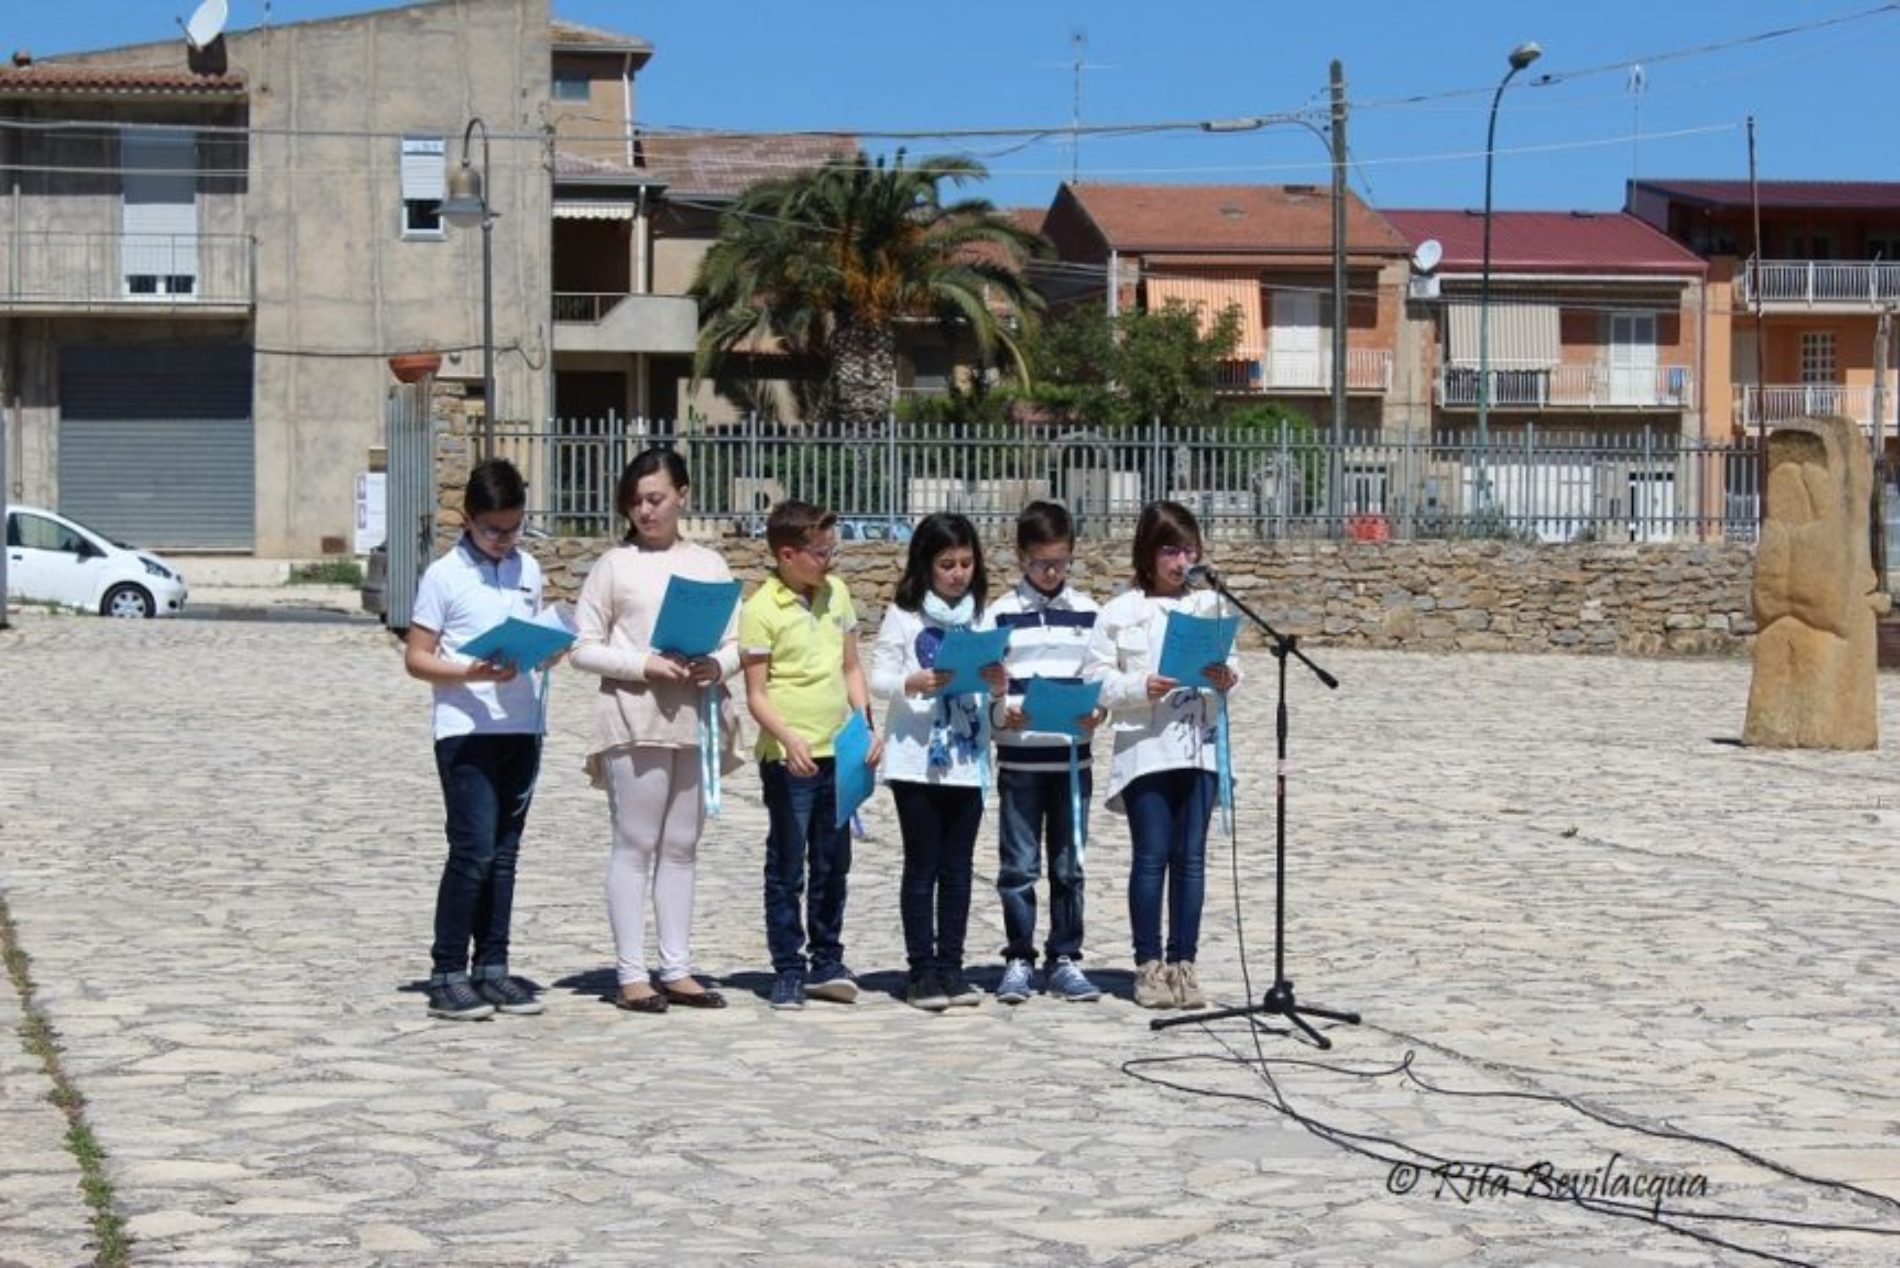 Barrafranca: Festa della lettura e del libro – “Uniti nella parola in nome della libertà”